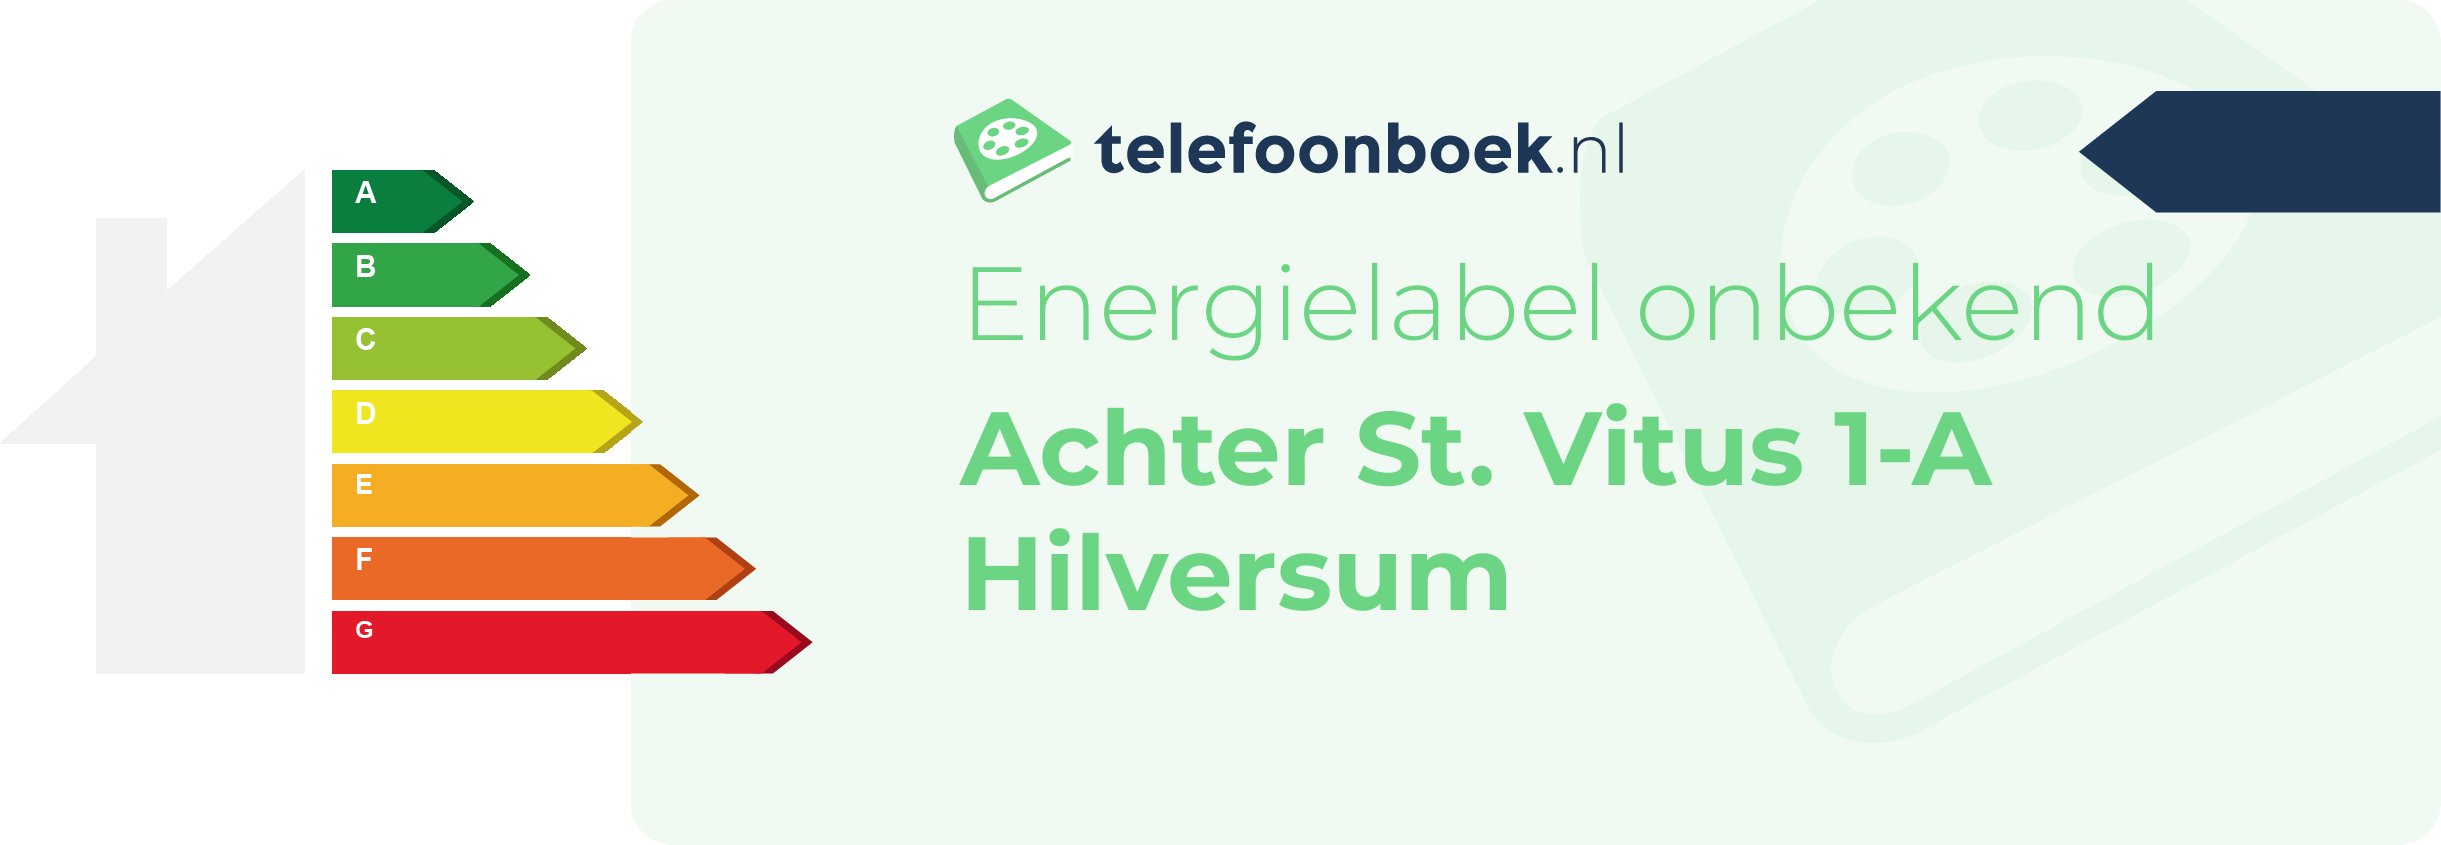 Energielabel Achter St. Vitus 1-A Hilversum